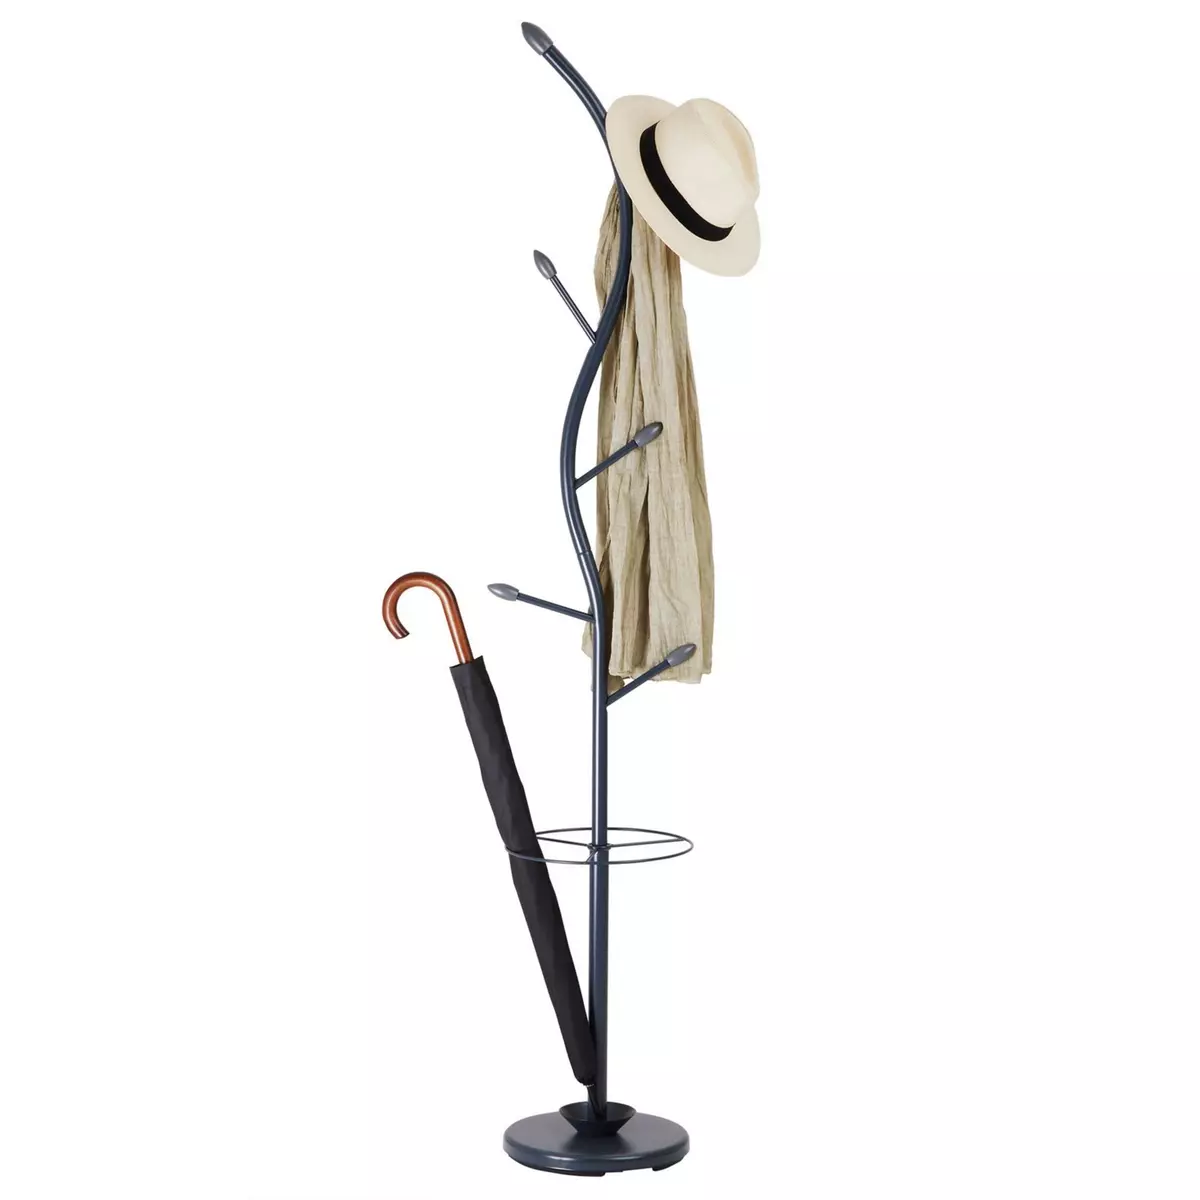 IDIMEX Porte-manteaux TRIANA portant à vêtements sur pied en forme d'arbre avec 6 crochets et un porte parapluie, métal laqué gris et bois